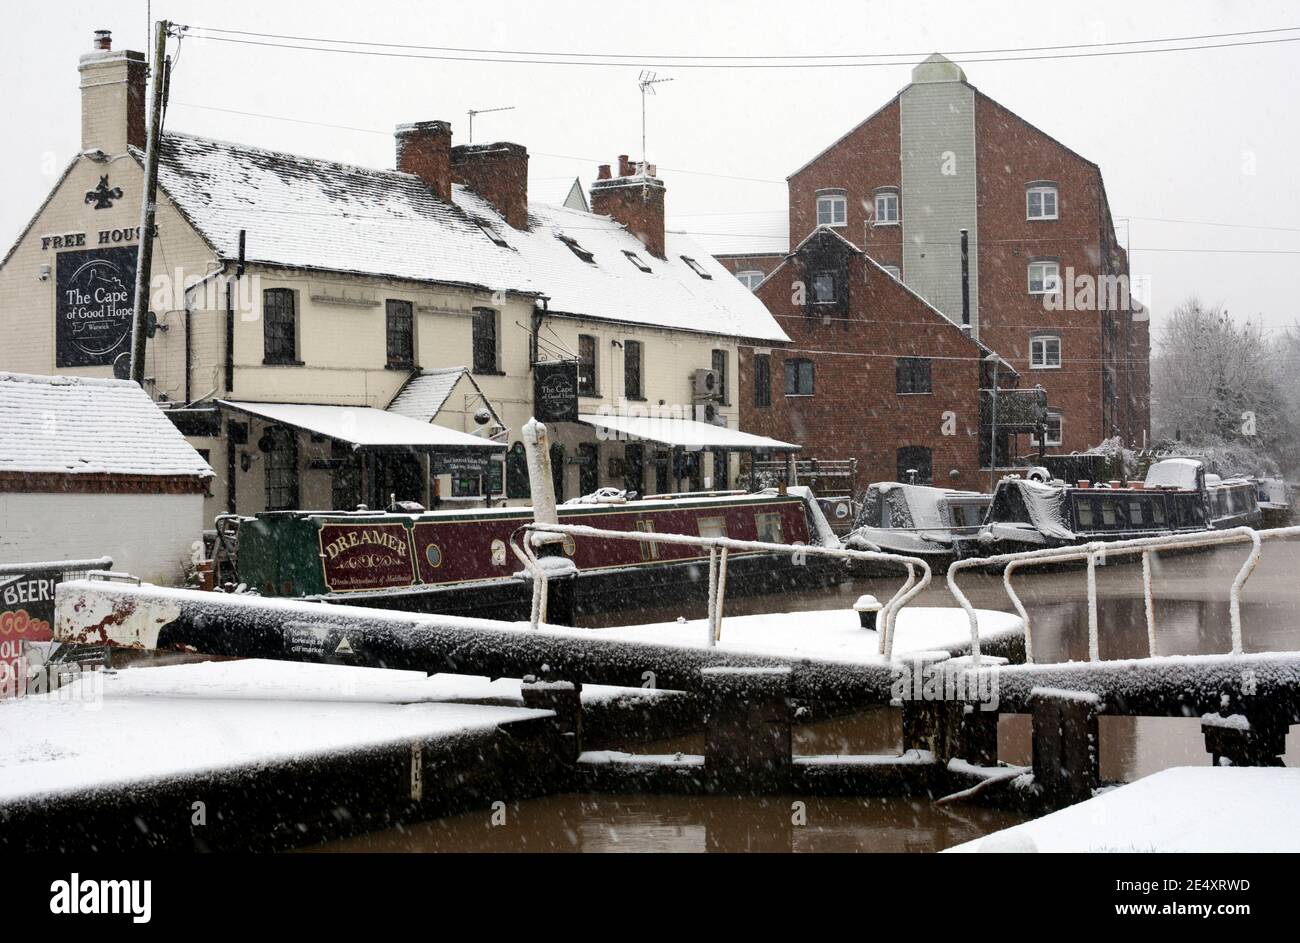 Il Cape of Good Hope pub sul Canal Grand Union in tempo nevoso, Warwick, Warwickshire, Inghilterra, Regno Unito Foto Stock